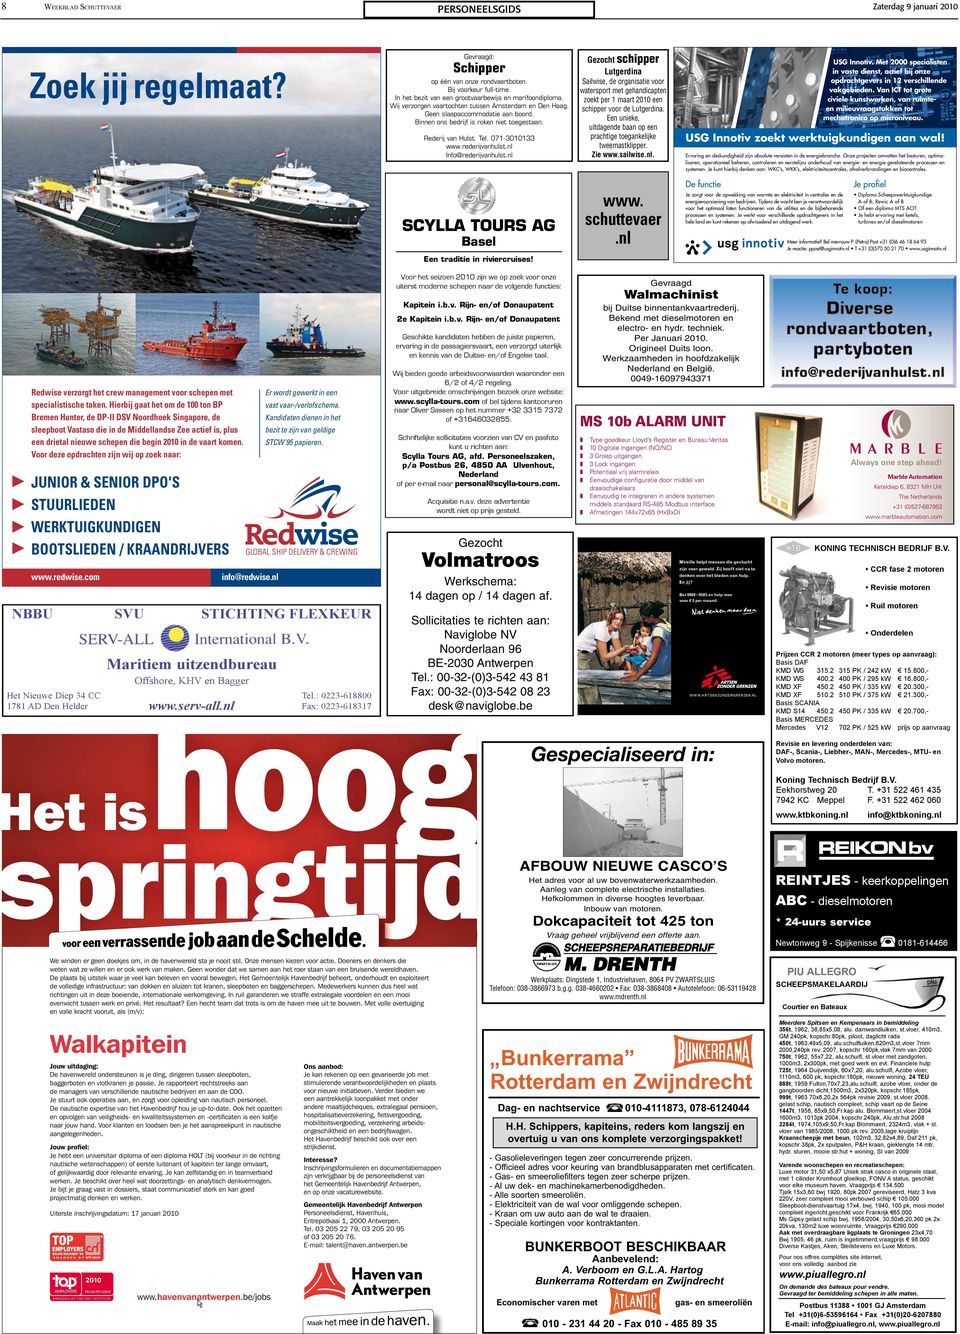 Binnen ons bedrijf is roken niet toegestaan. Sailwise, de organisatie voor watersport met gehandicapten zoekt per 1 maart 2010 een schipper voor de Lutgerdina.